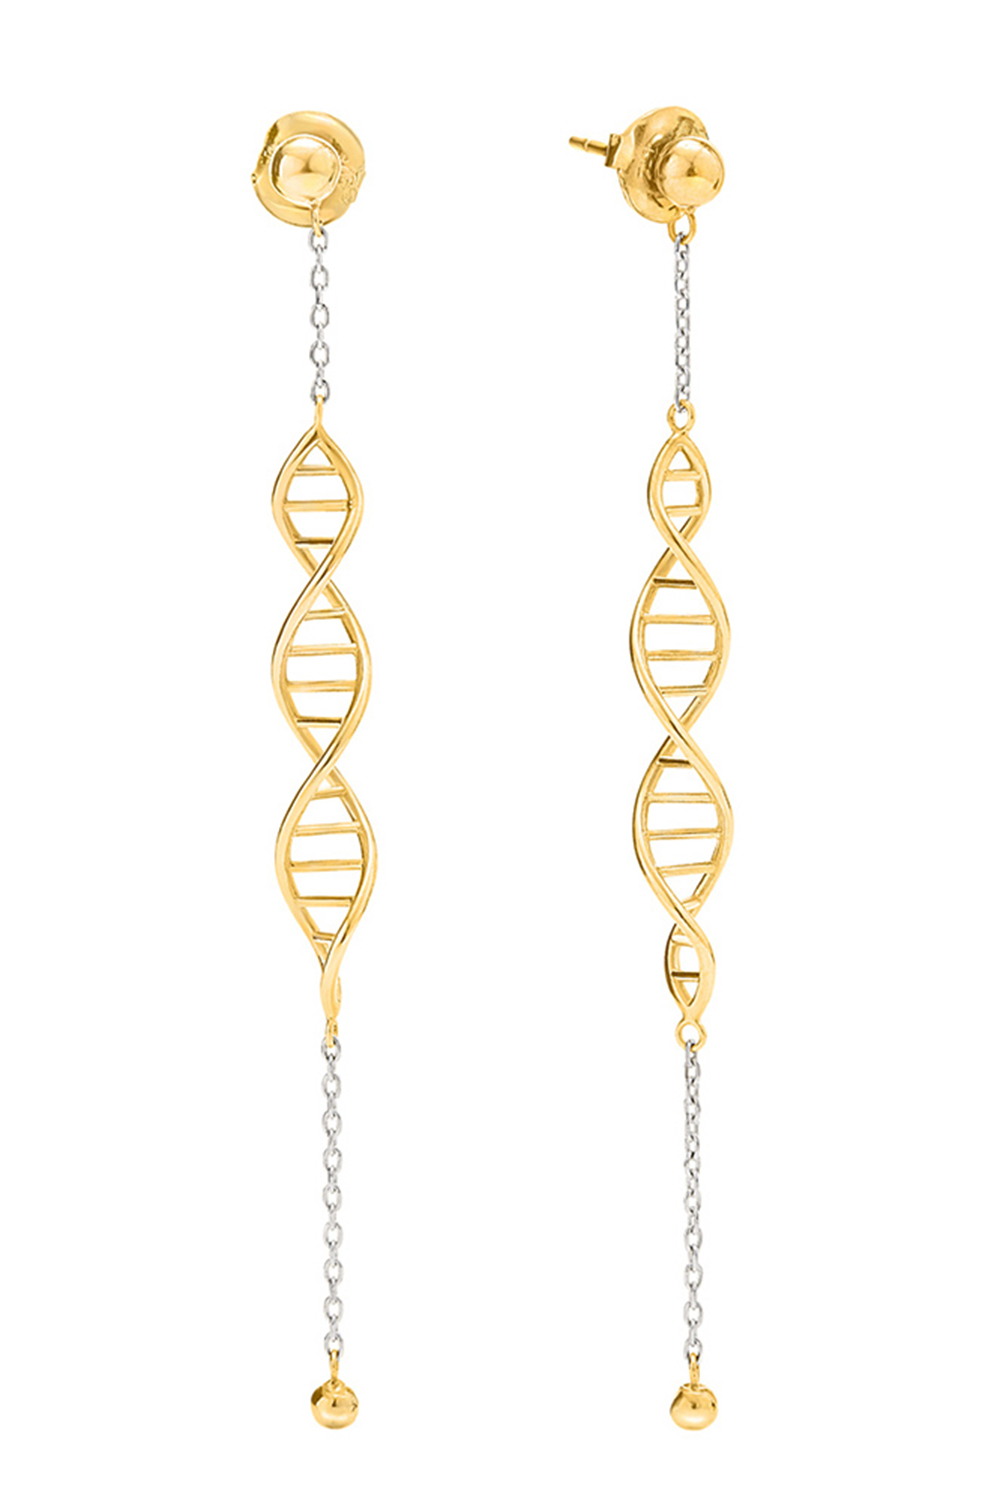 Γυναικεία/Αξεσουάρ/Κοσμήματα/Σκουλαρίκια FOLLI FOLLIE - Γυναικεία ασημένια μακριά σκουλαρίκια FOLLI FOLLIE STYLE DNA χρυσά